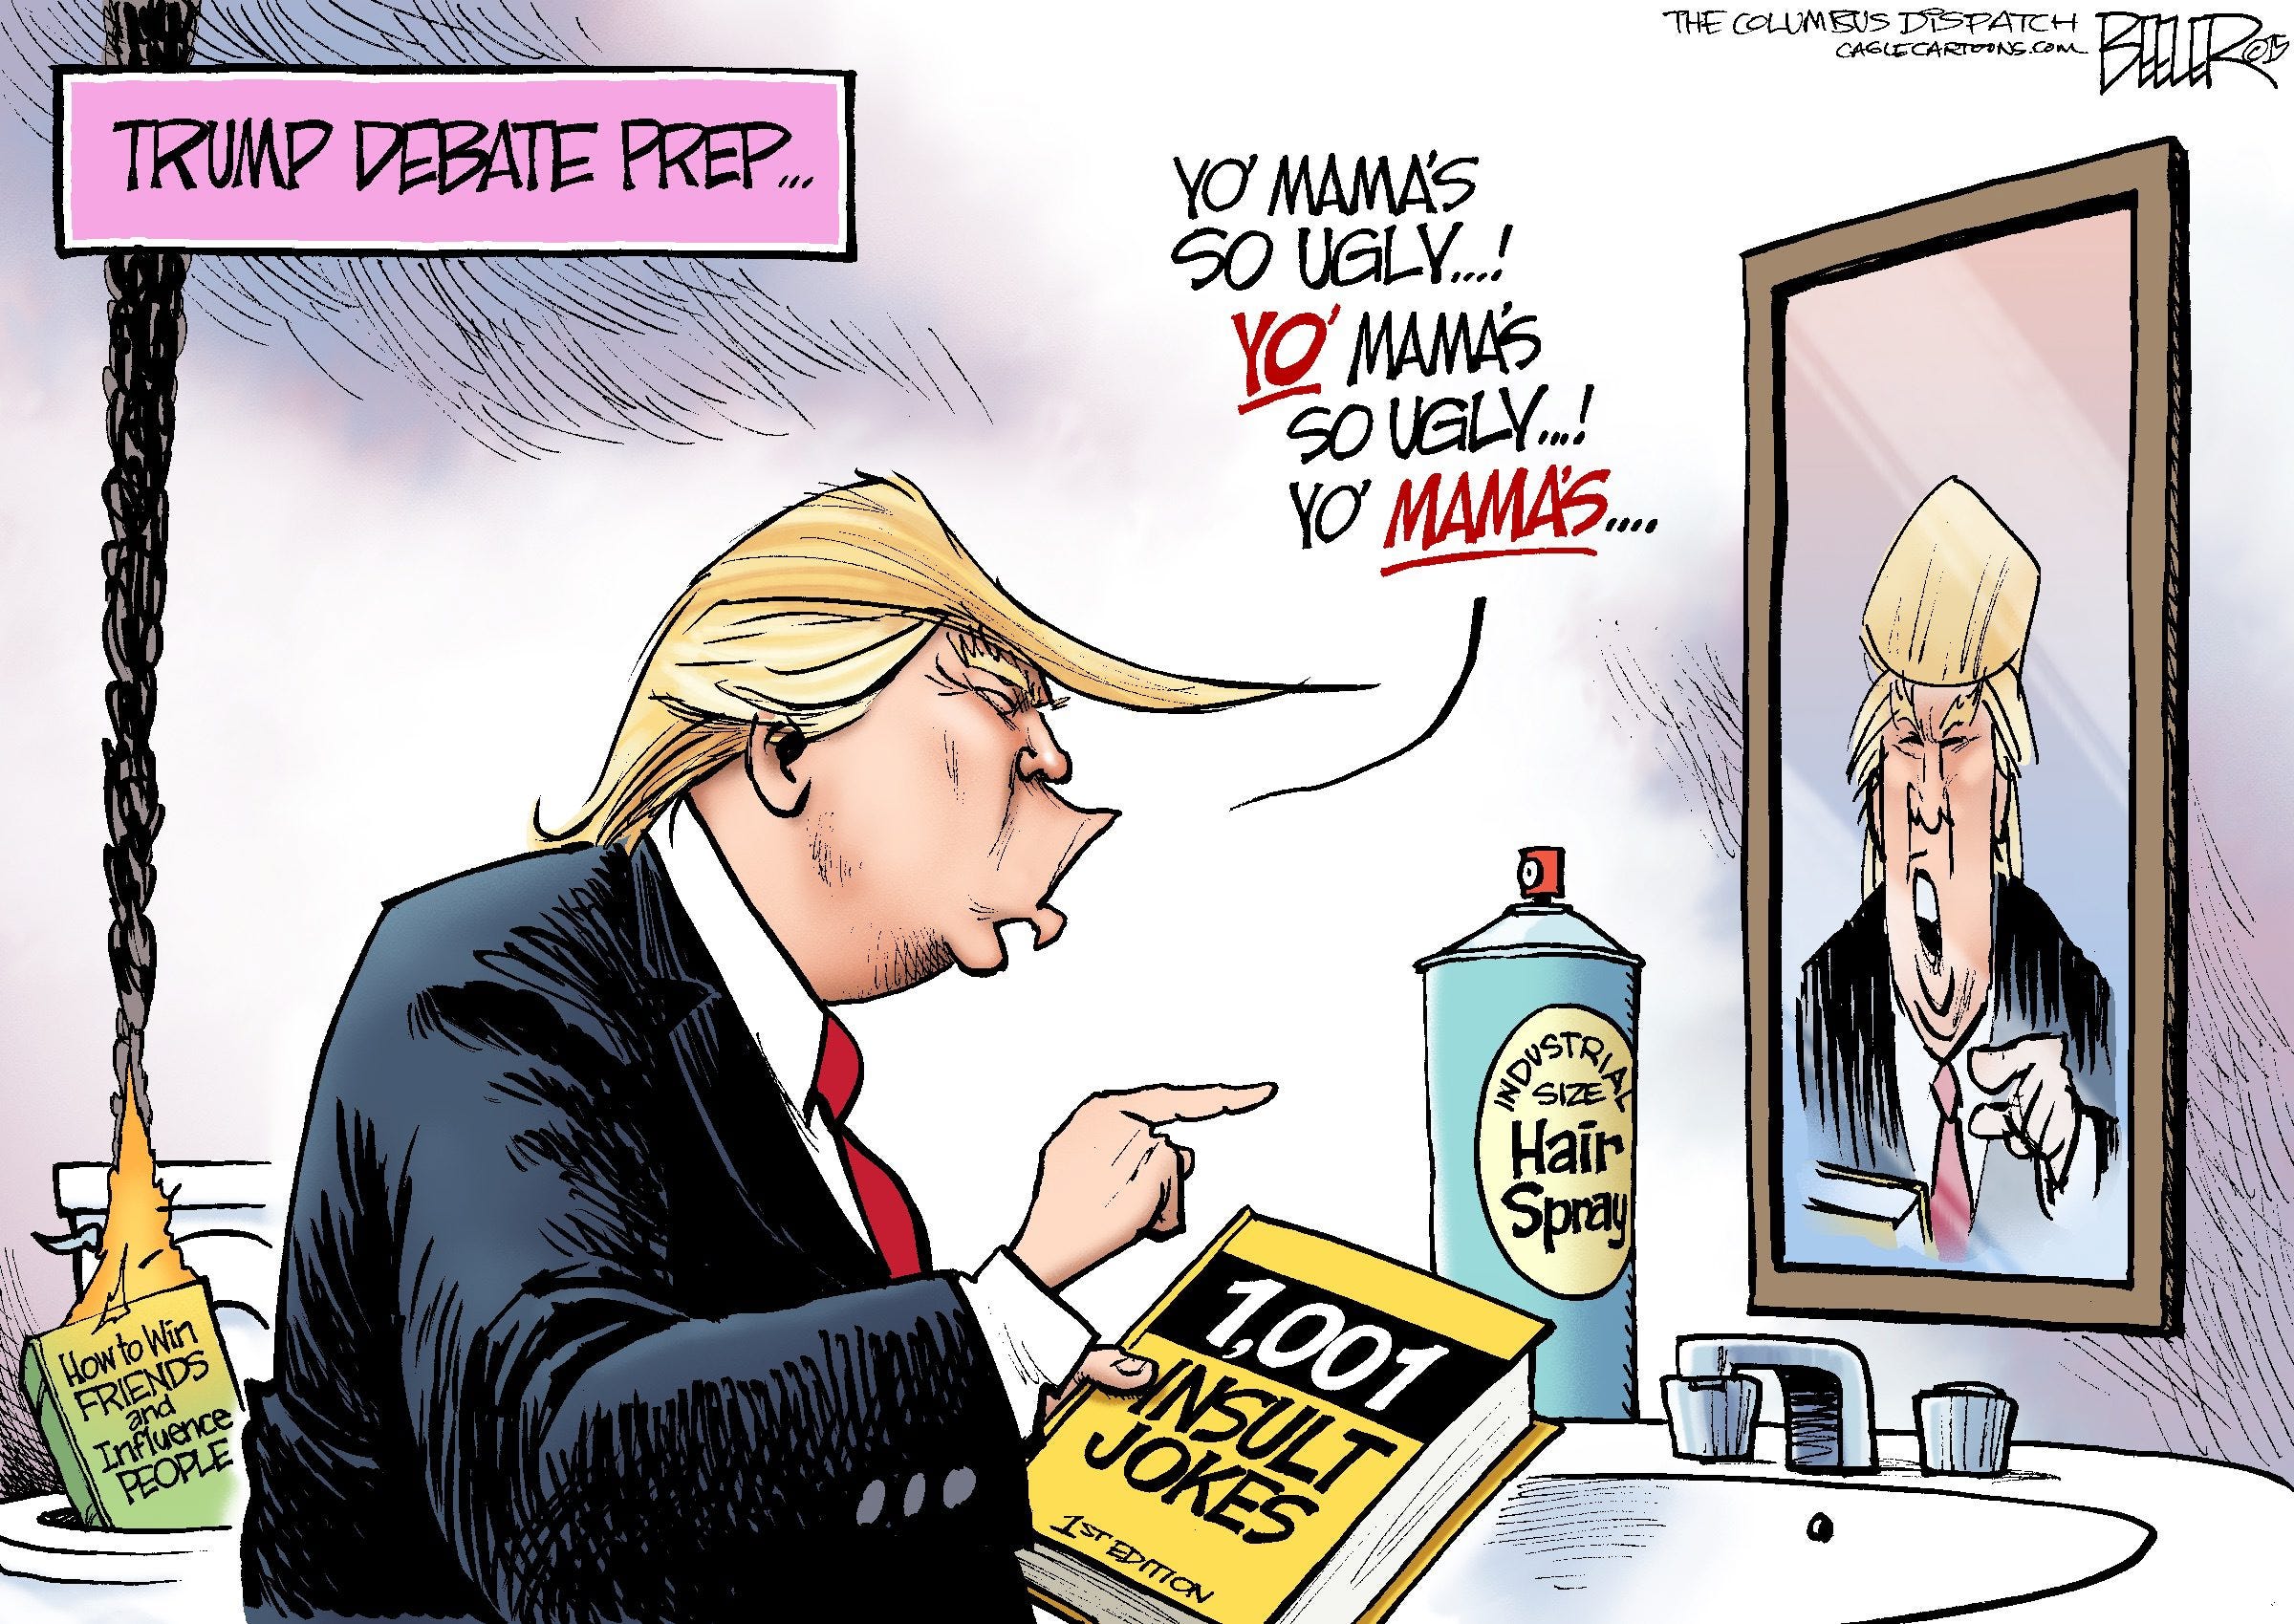 Beeler cartoon: Trump practices insults for debate